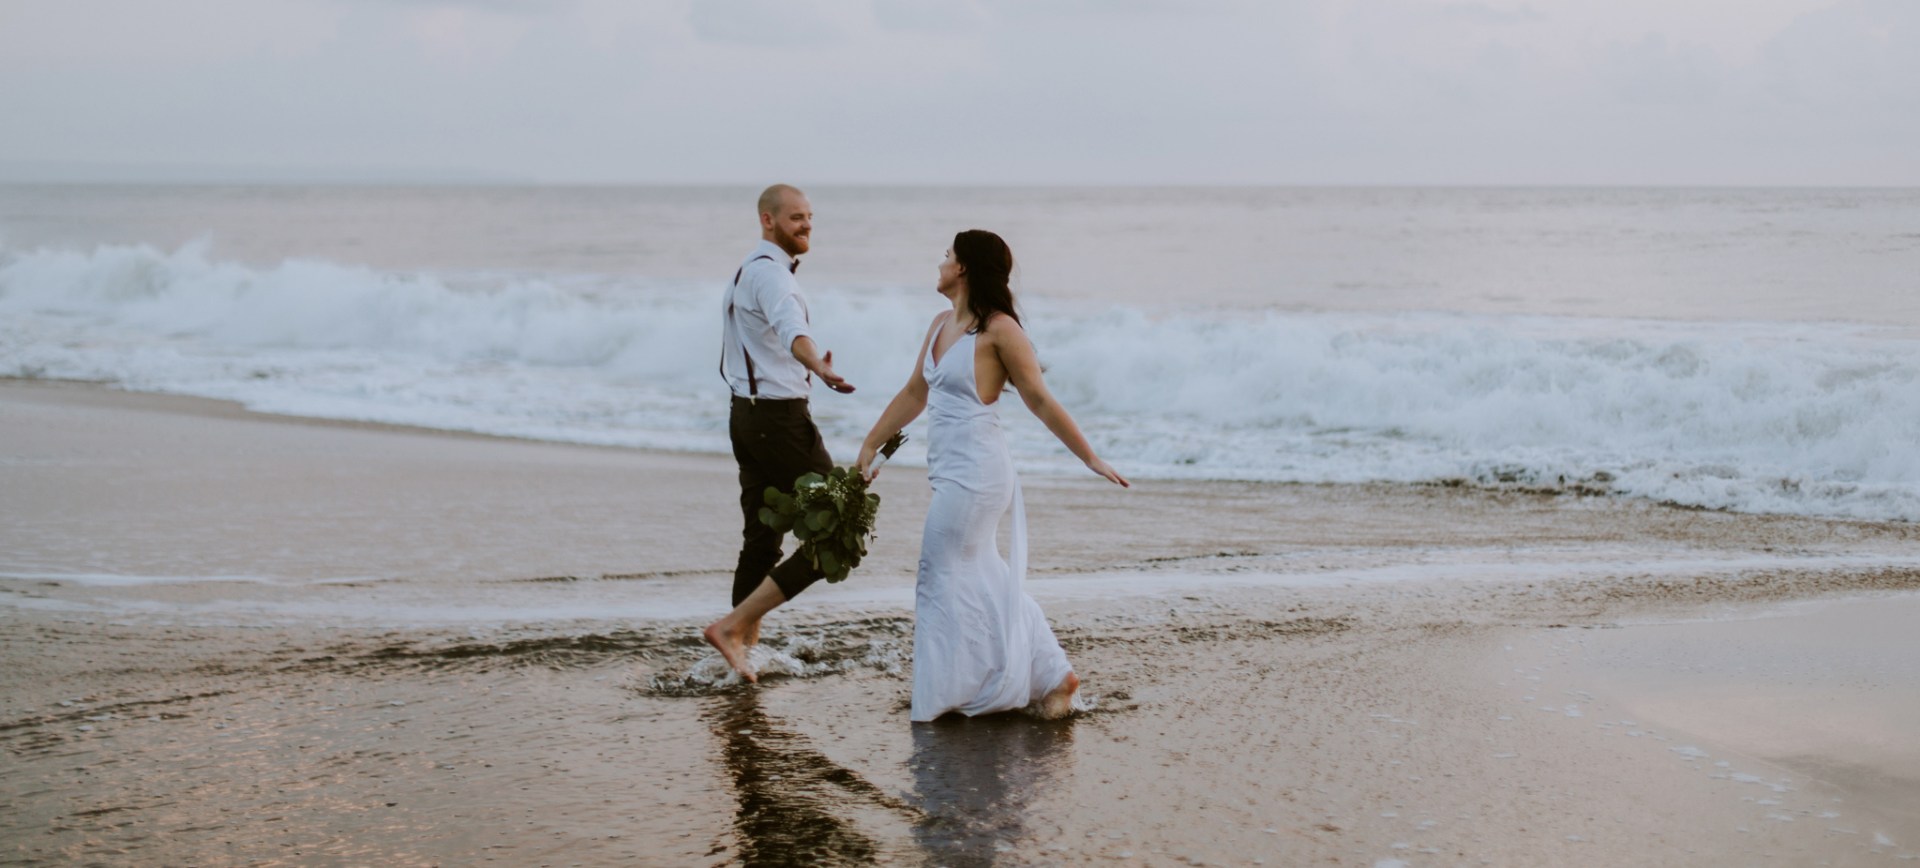 bali beach wedding - bride & groom dancing in the water